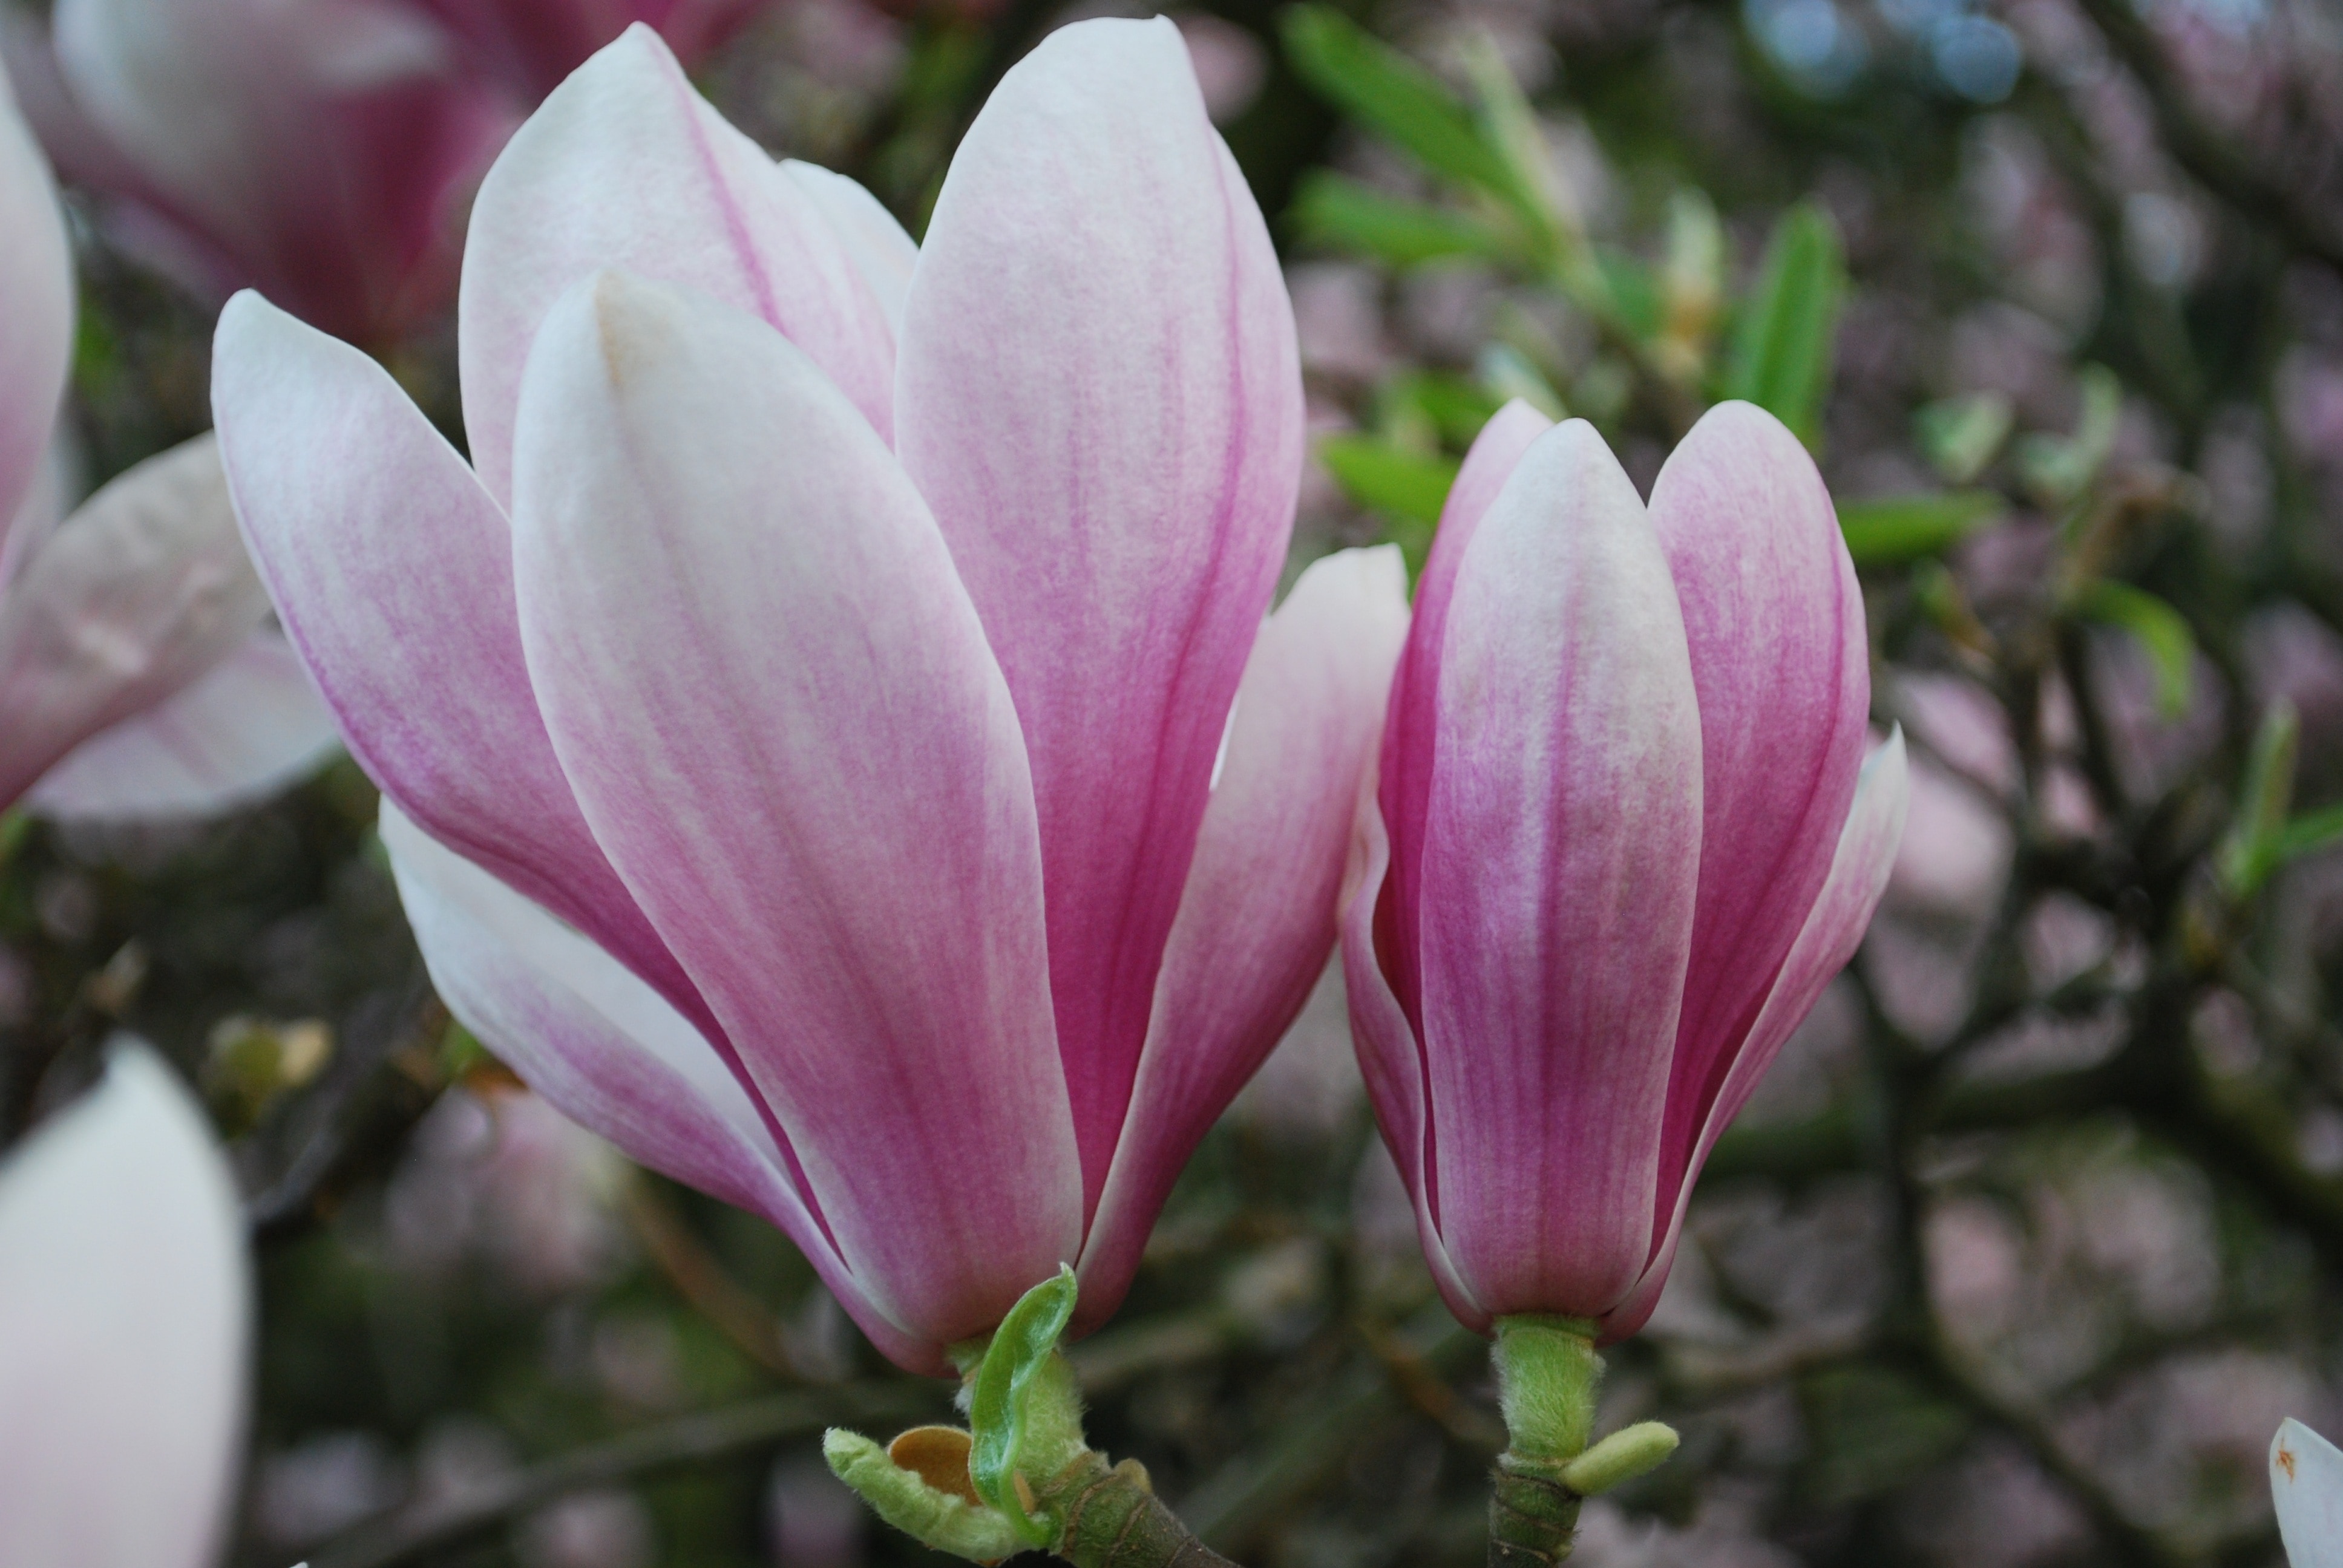 Magnolia, Nature, Plants, Flowers, pink color, flower